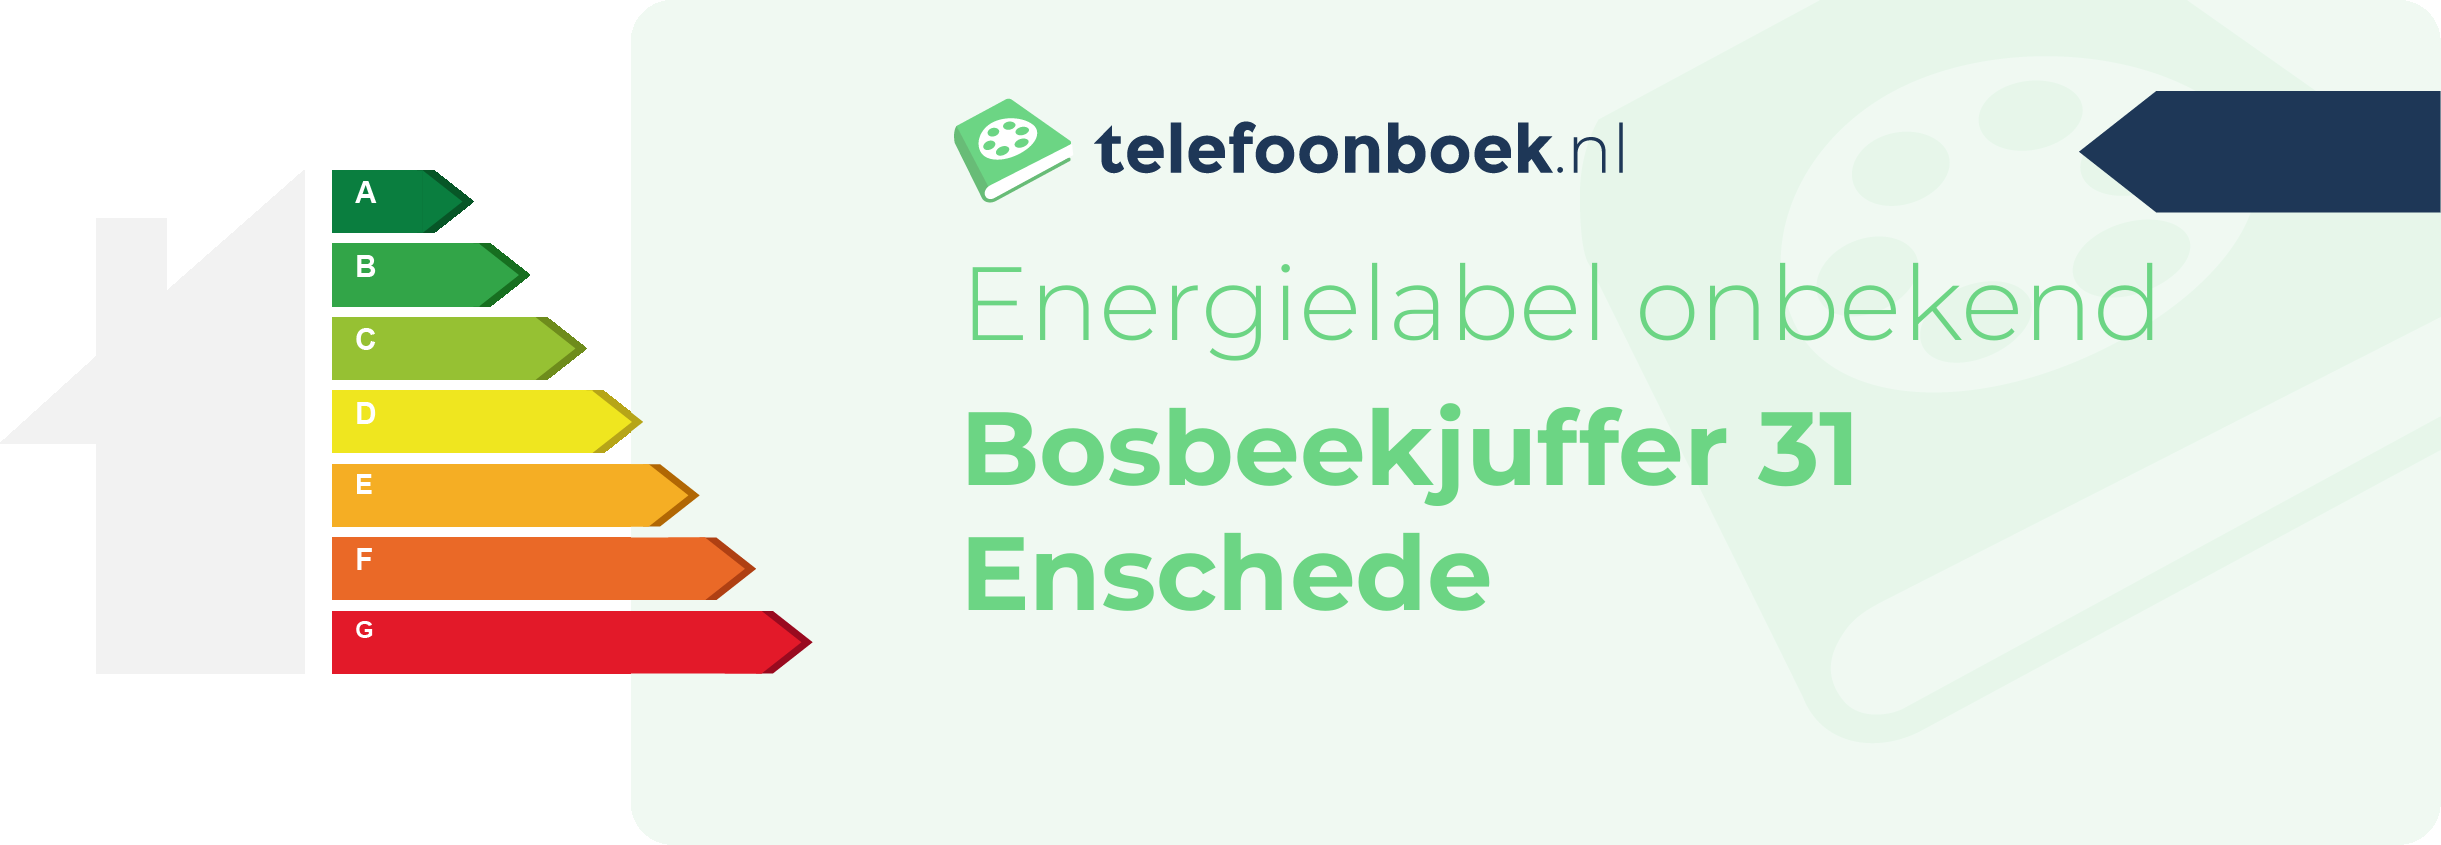 Energielabel Bosbeekjuffer 31 Enschede